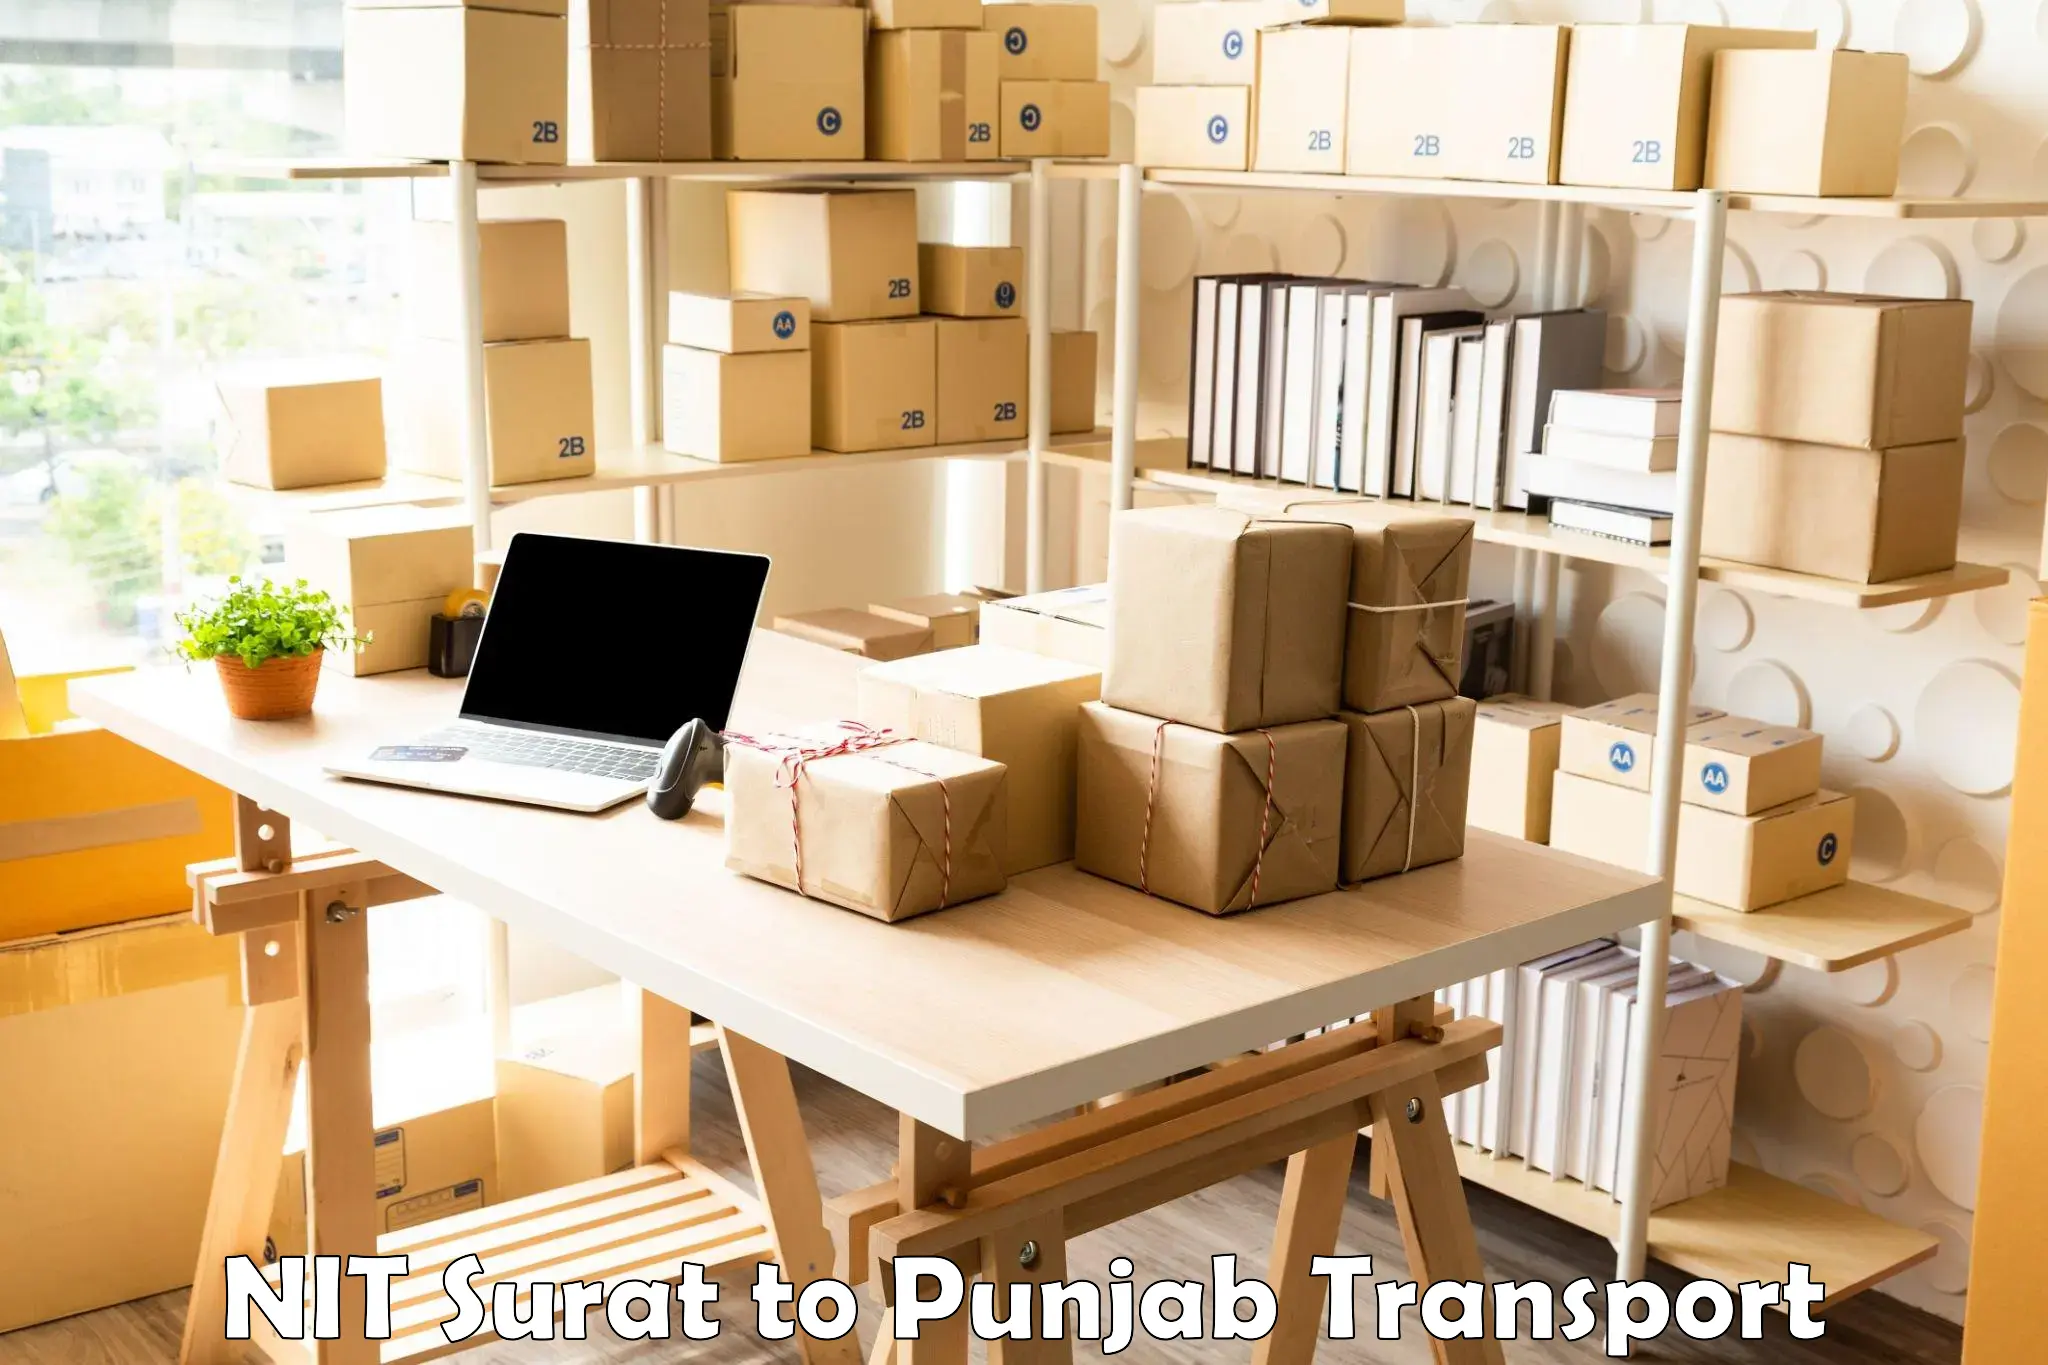 Vehicle transport services NIT Surat to Punjab